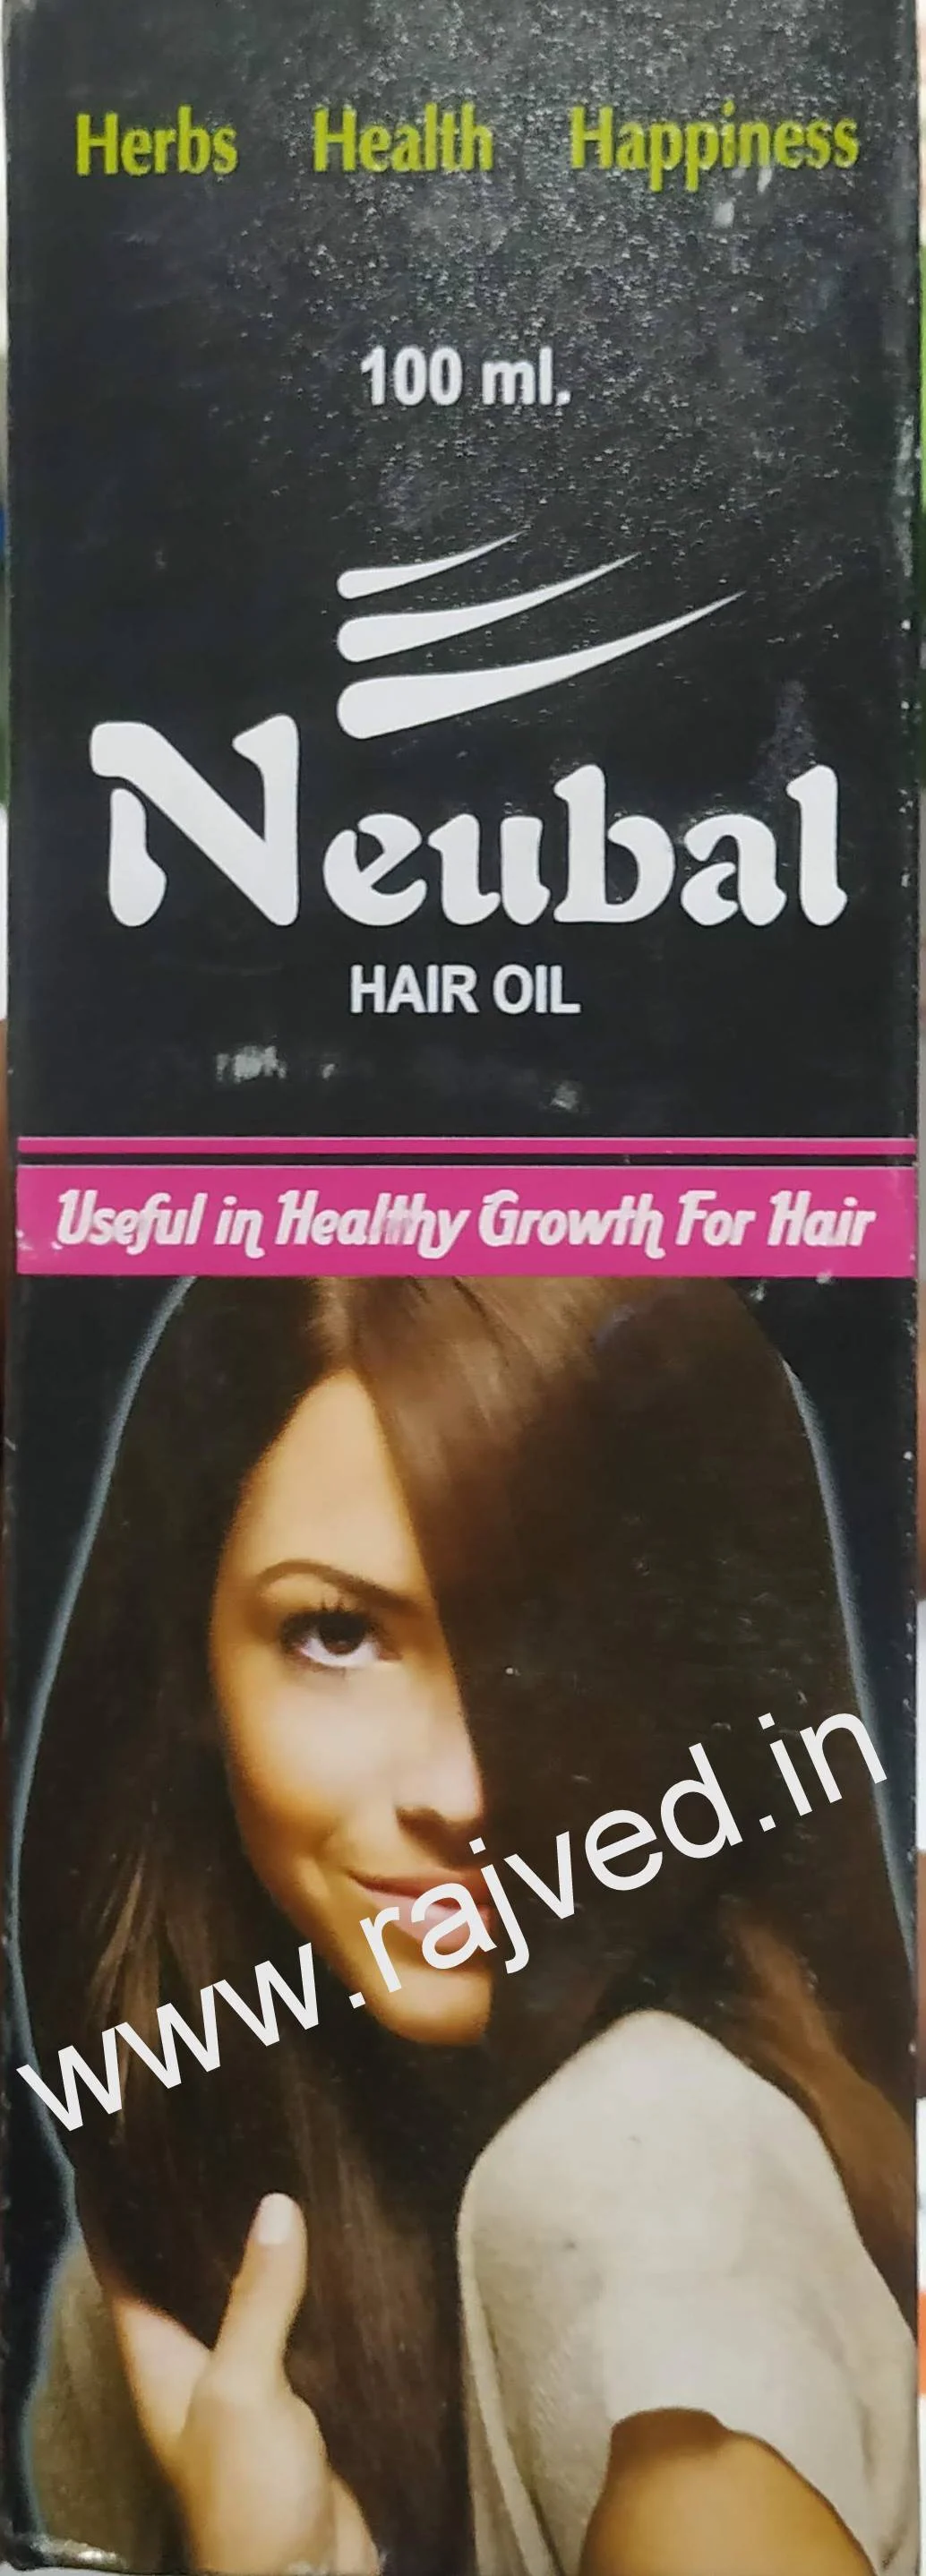 Neubal Hair Oil